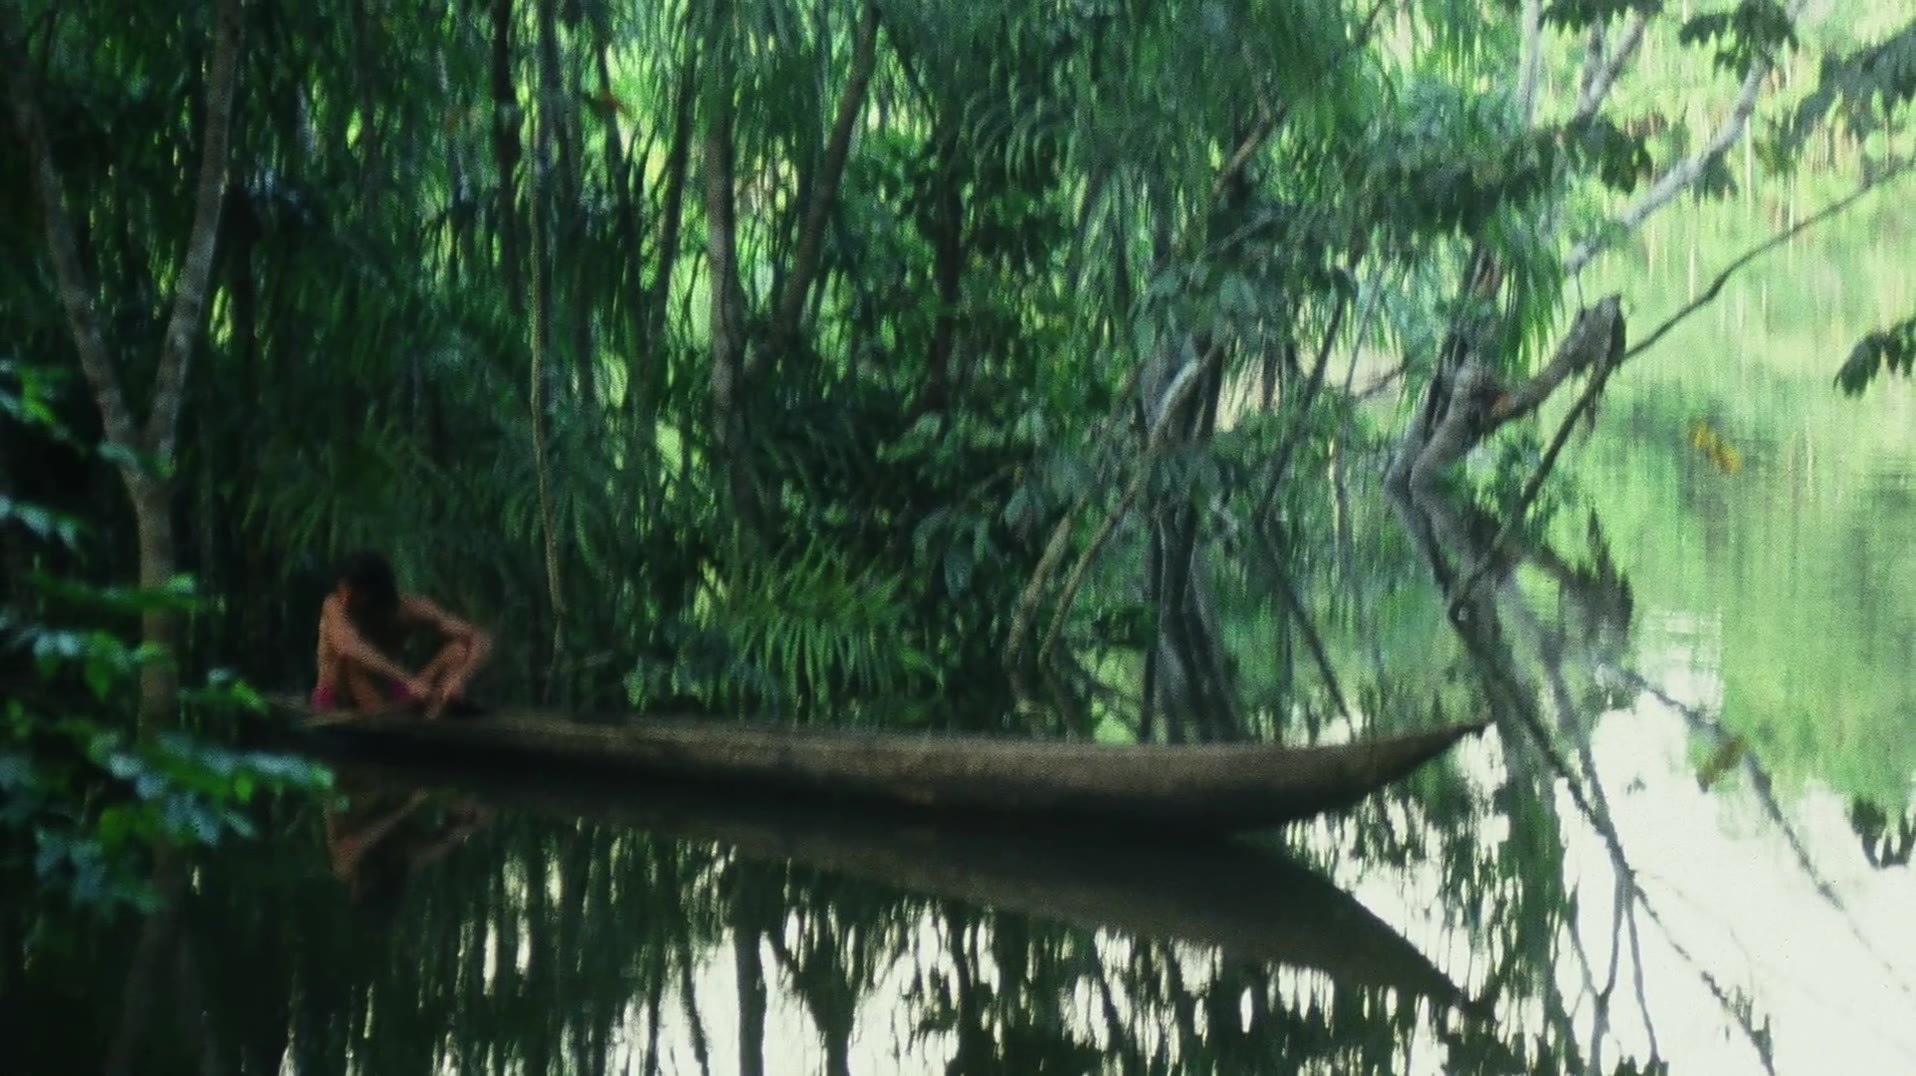 原始求生记：逃出亚马逊 第1集 第一站：茂密丛林 [1080P]